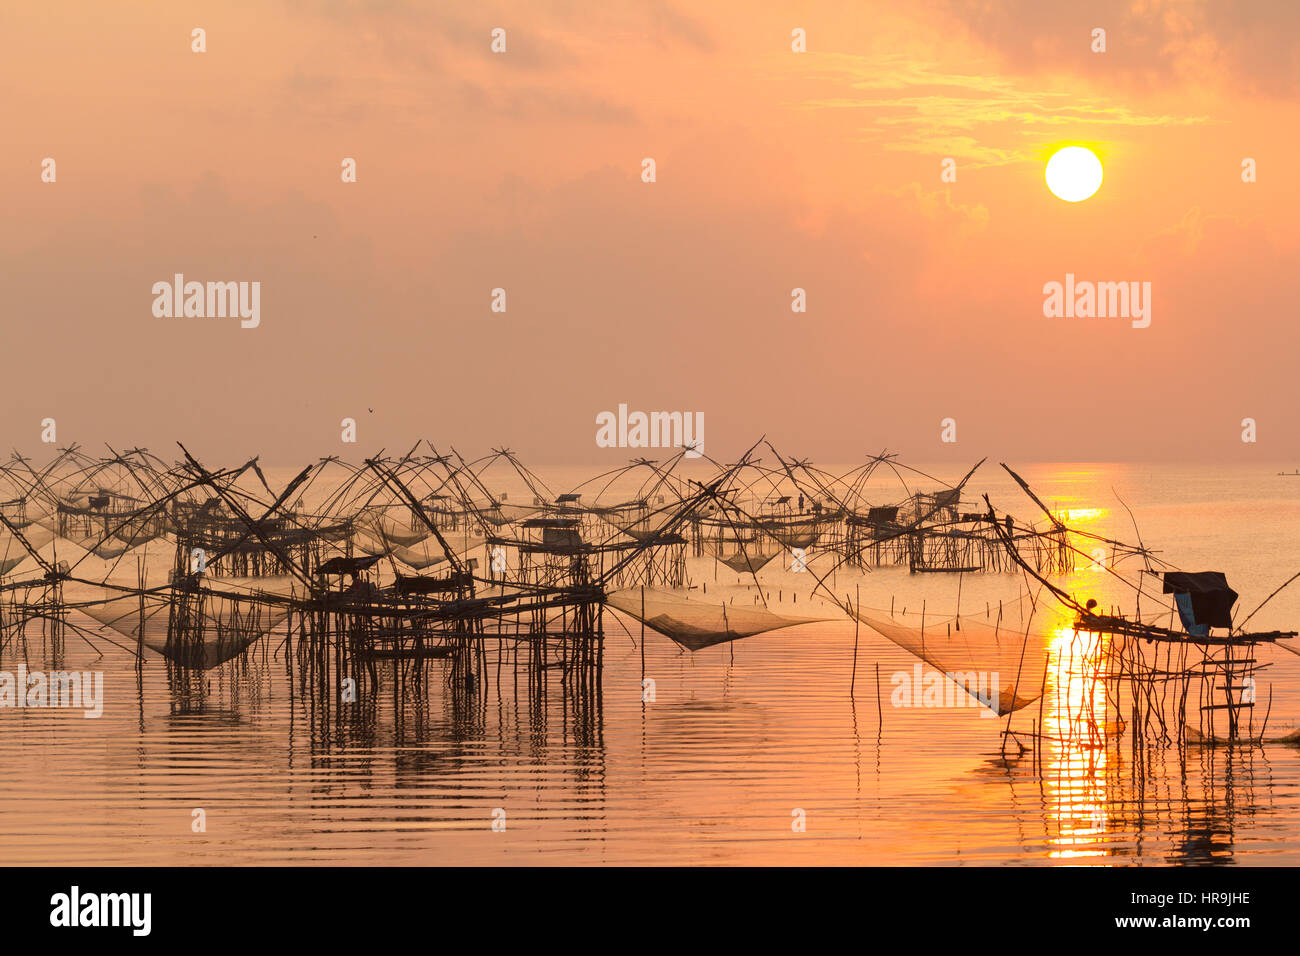 Les filets de pêche dans le lac dans la partie sud de la Thaïlande dans la lumière du matin chaud d'or Banque D'Images